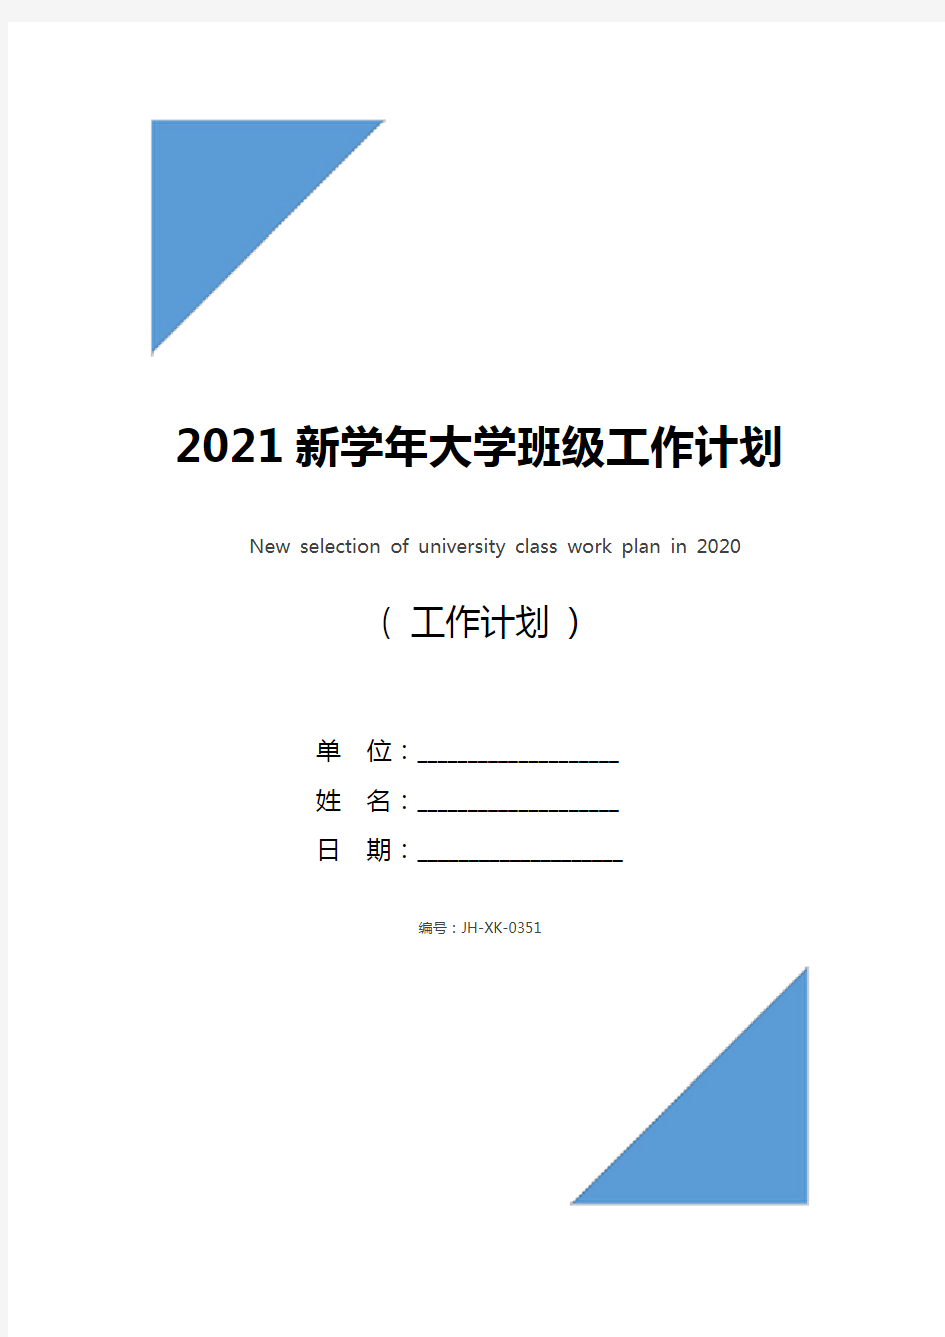 2021新学年大学班级工作计划新选(通用版)